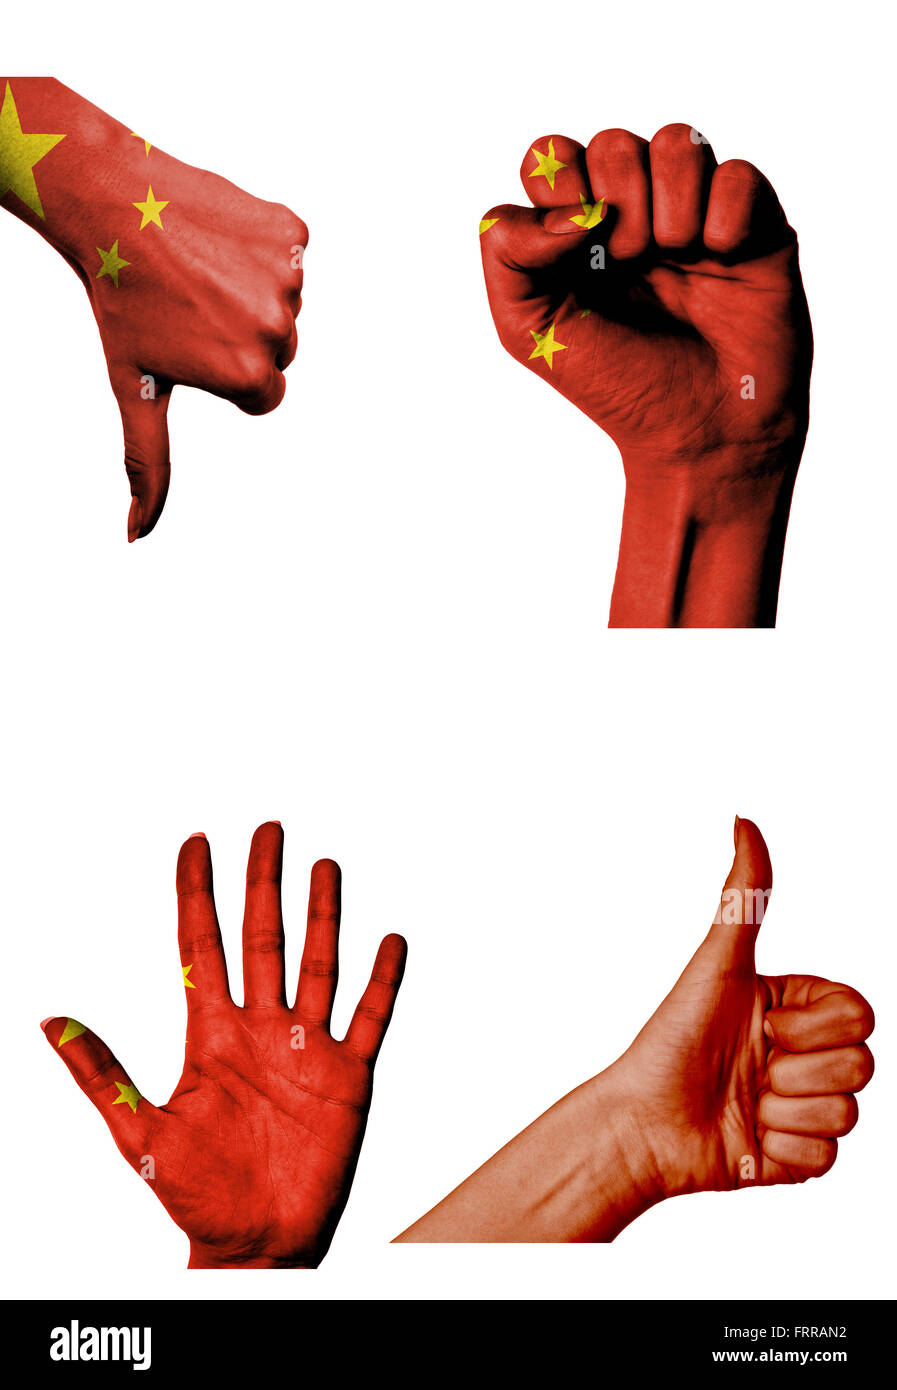 Le mani con più gesti (aprire palm, pugno chiuso, pollice in alto e in basso) con la Repubblica popolare cinese bandiera dipinta o isolato Foto Stock